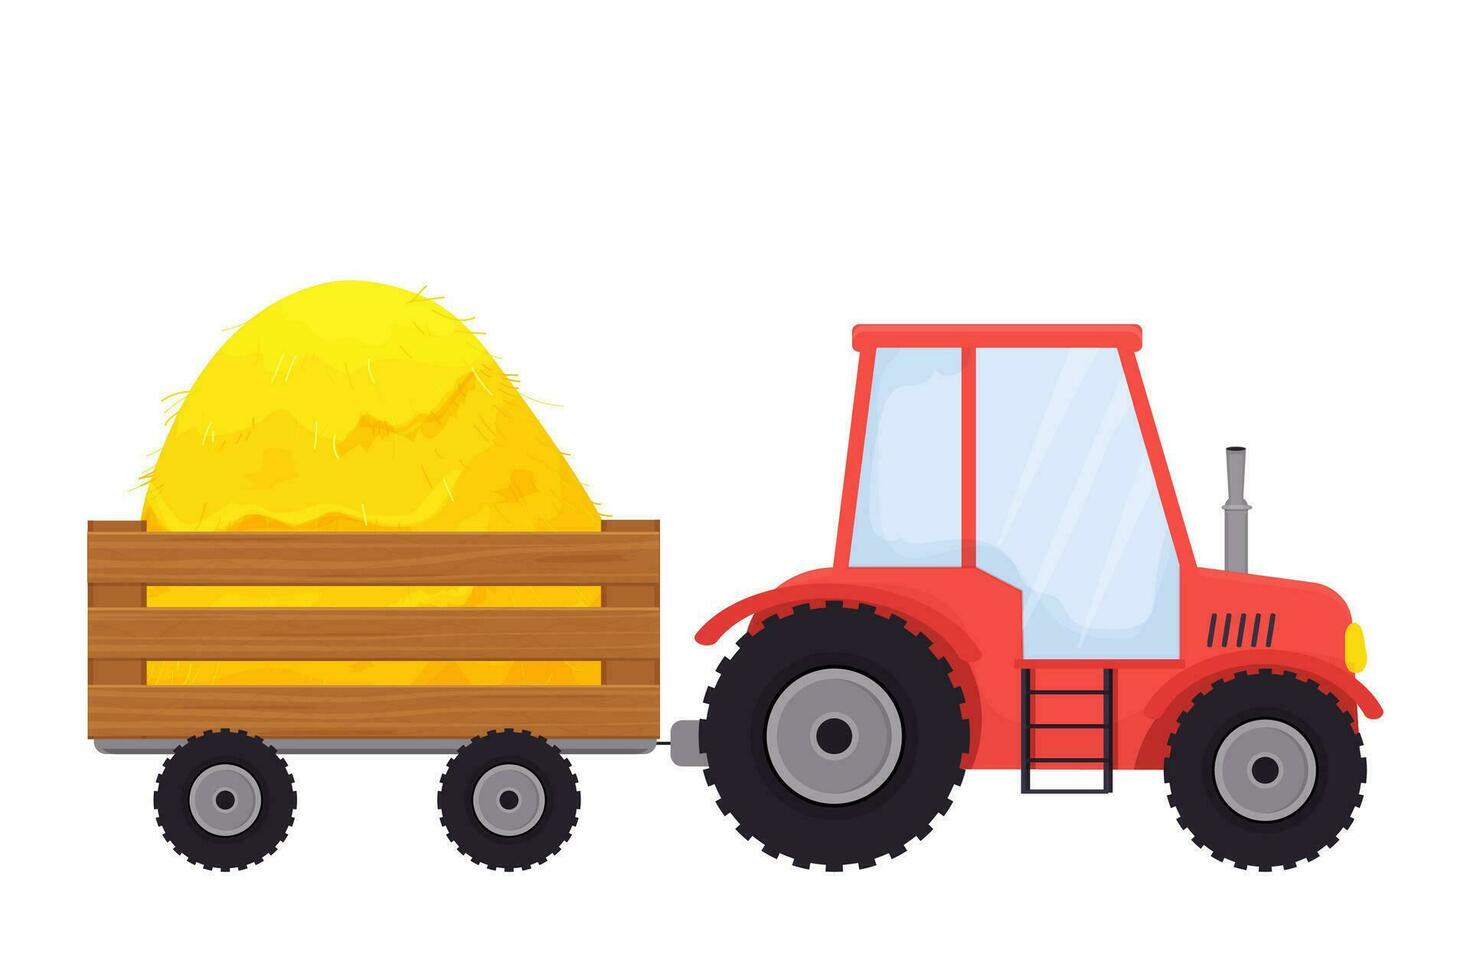 rode trekker met aanhanger, landbouwmachines in cartoon stijl geïsoleerd op een witte achtergrond. landvoertuig, oogst. . vector illustratie